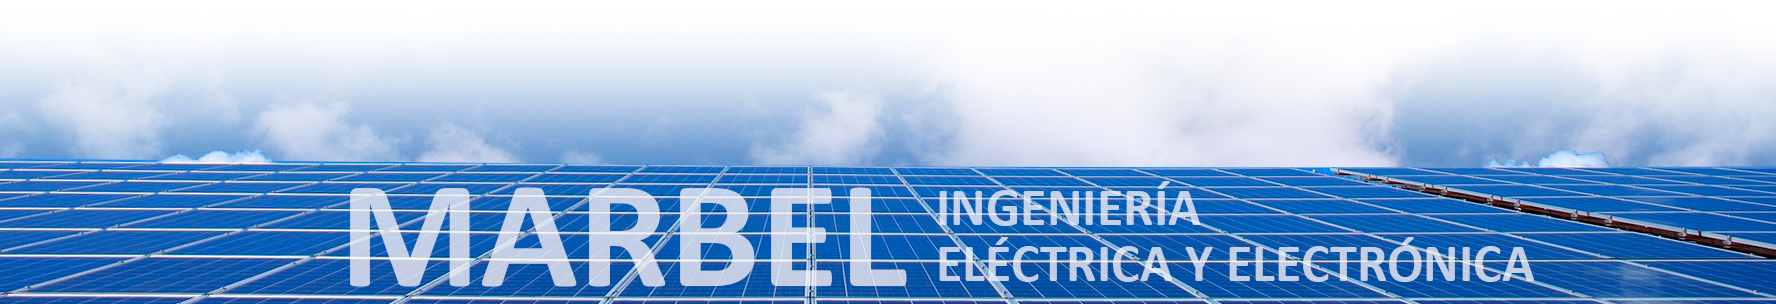 MARBEL - Instalaciones solares fotovoltaicas. Salamanca.